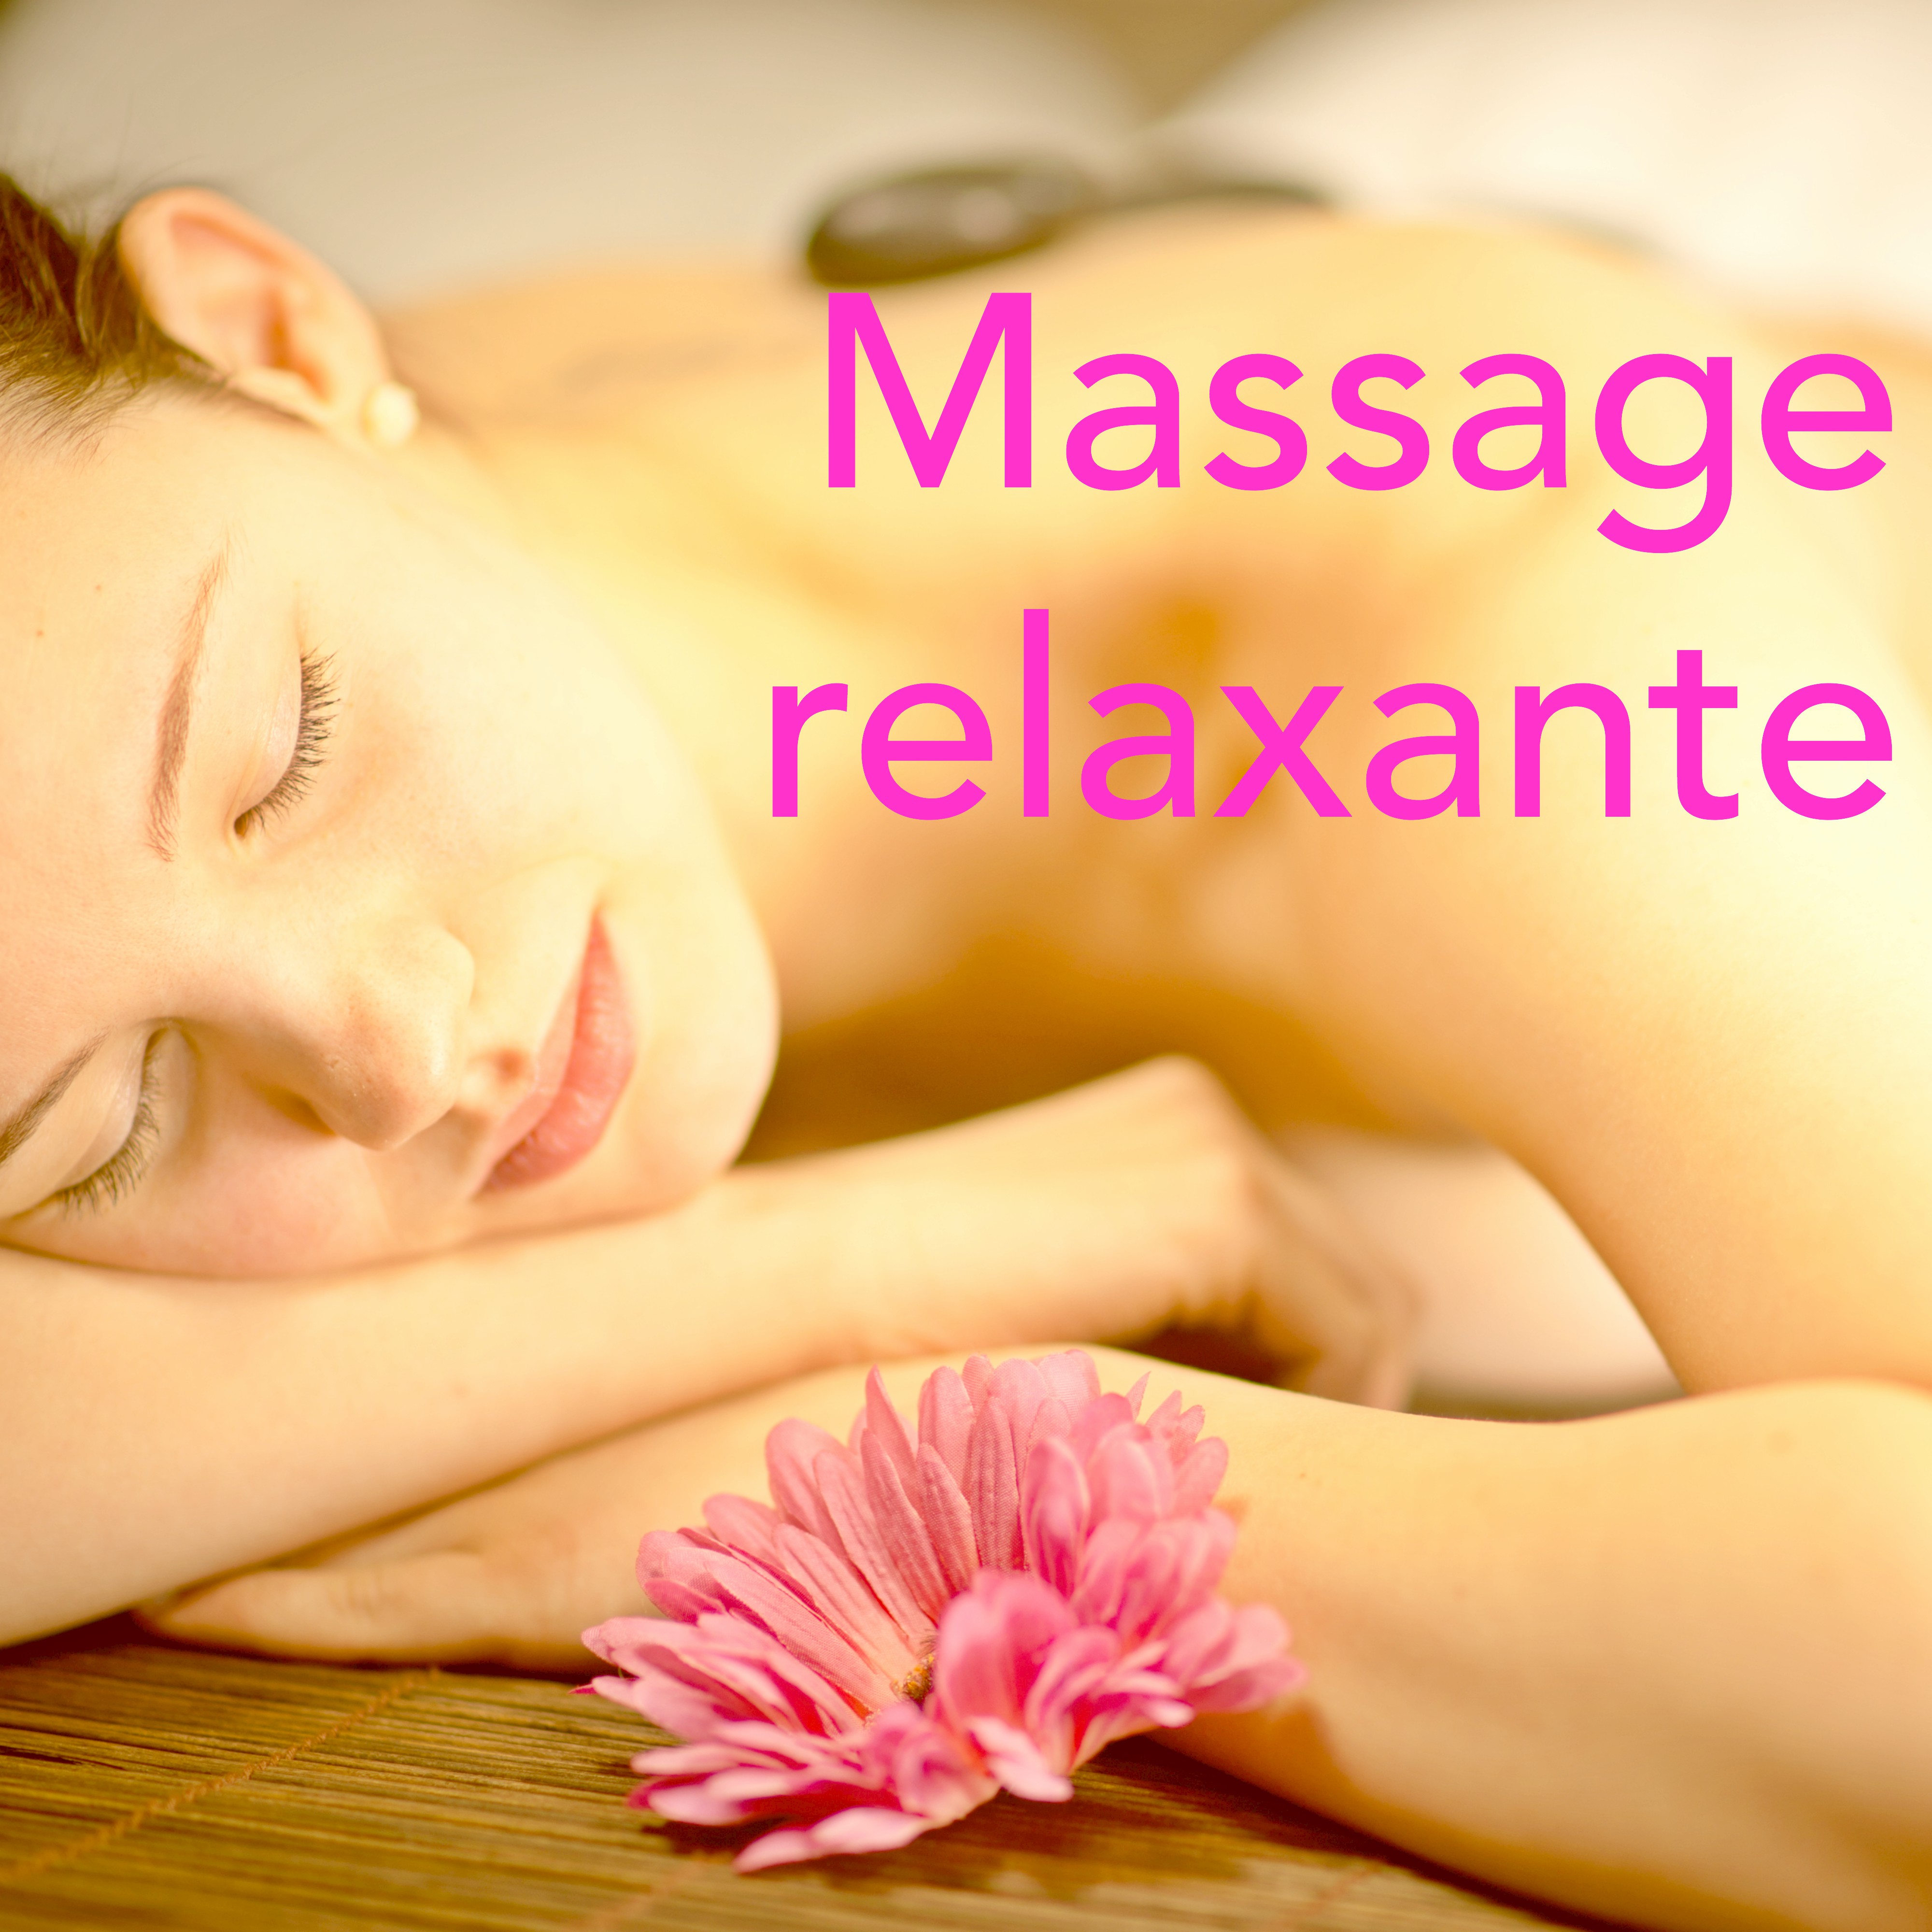 Massage Relaxante  Compilation pour Massage Longue et Profonde, Re ge ne ration de Corps et Esprit